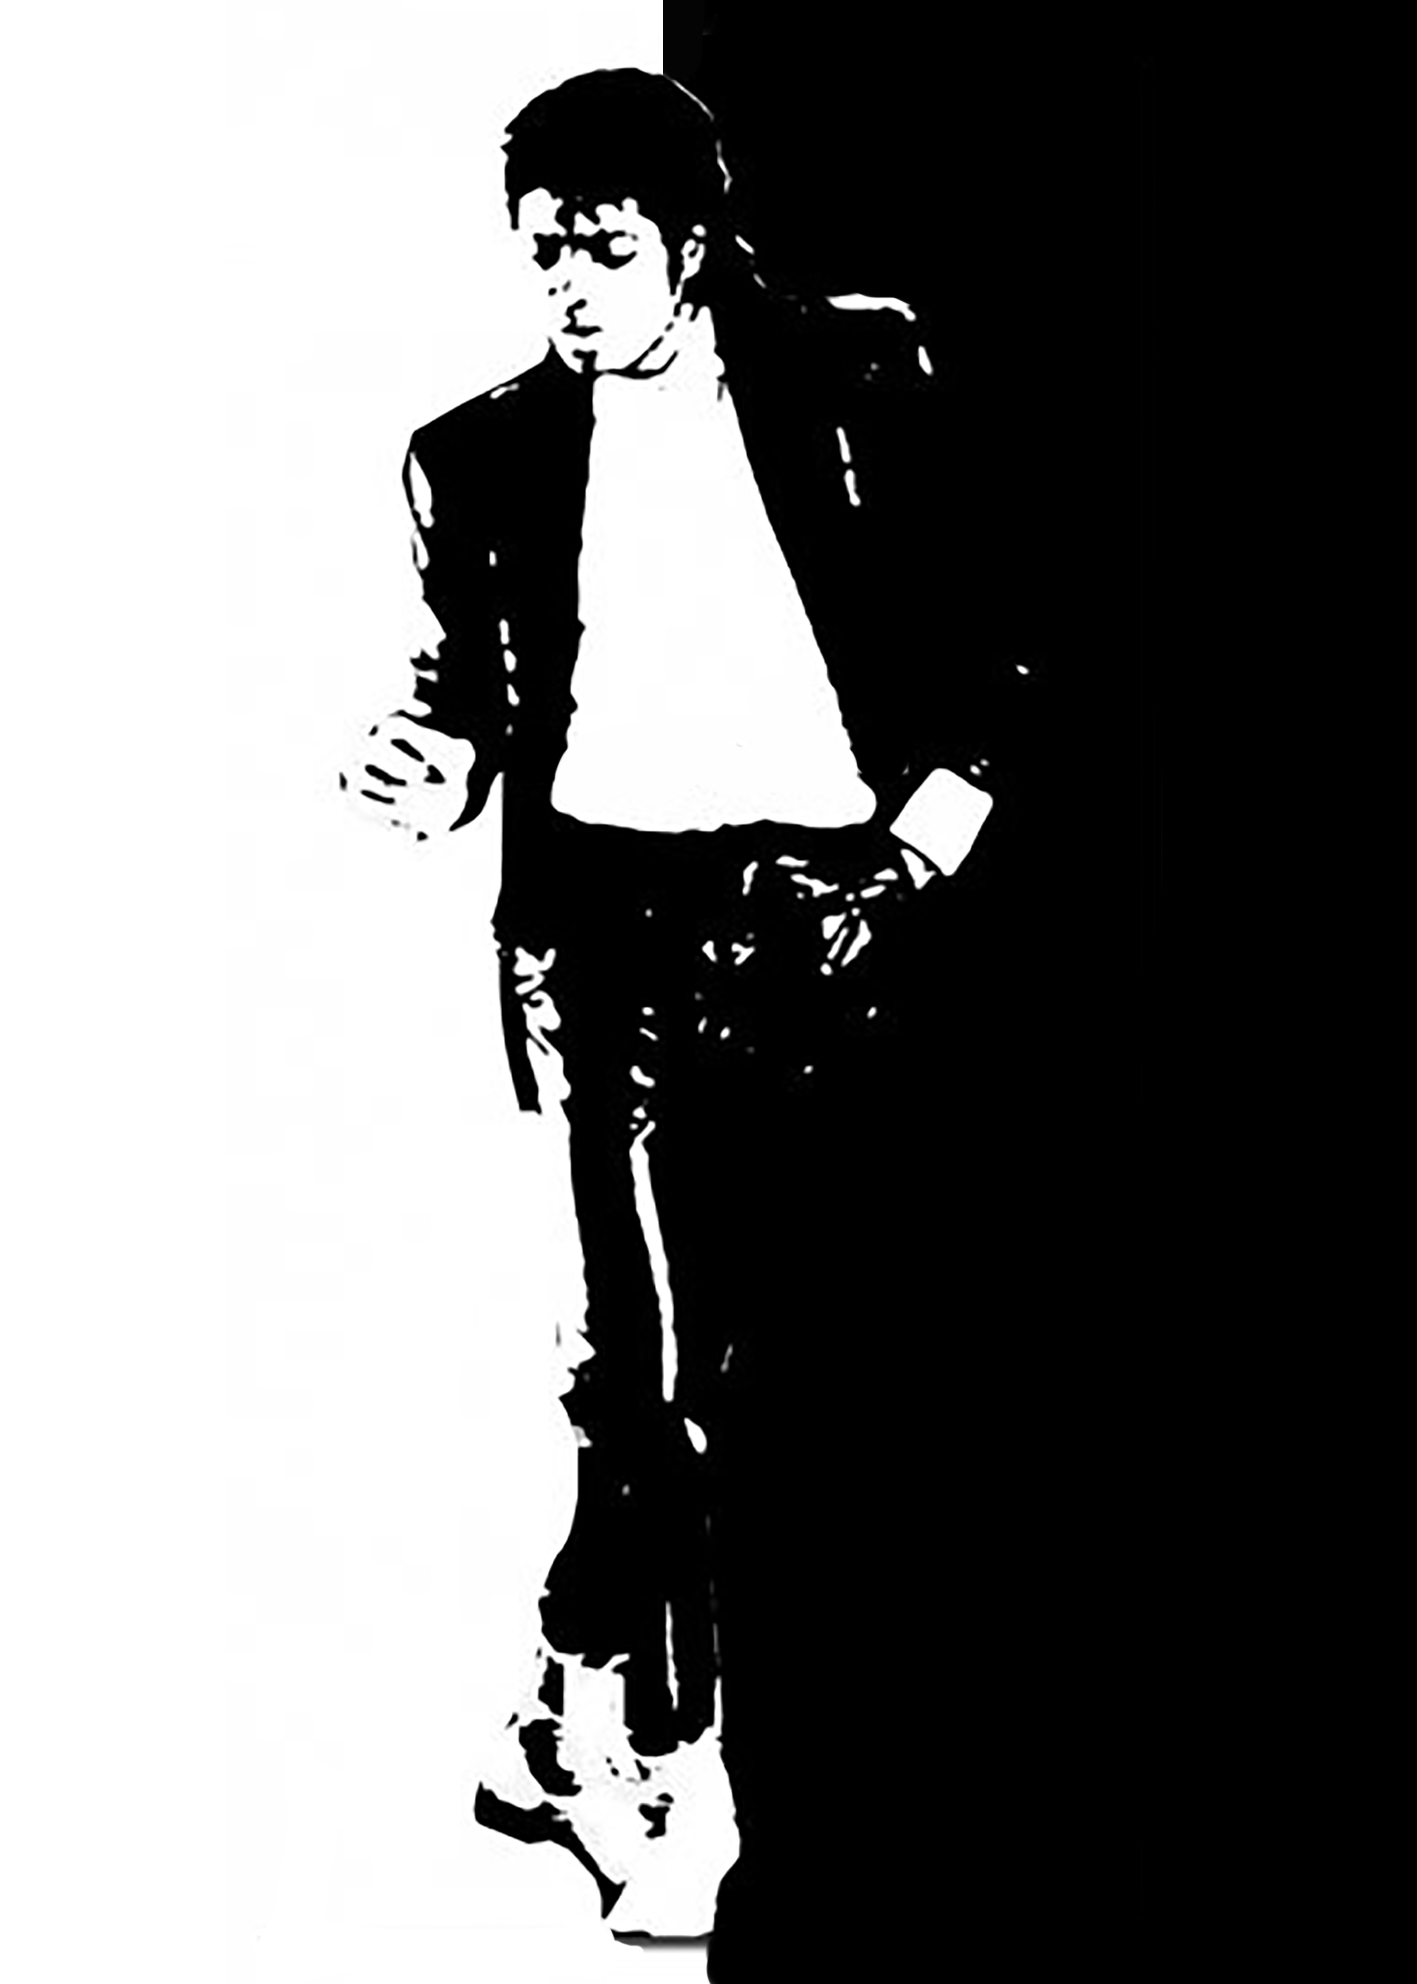 Billie Jean | Michael jackson dangerous, Michael jackson, Michael jackson  pics